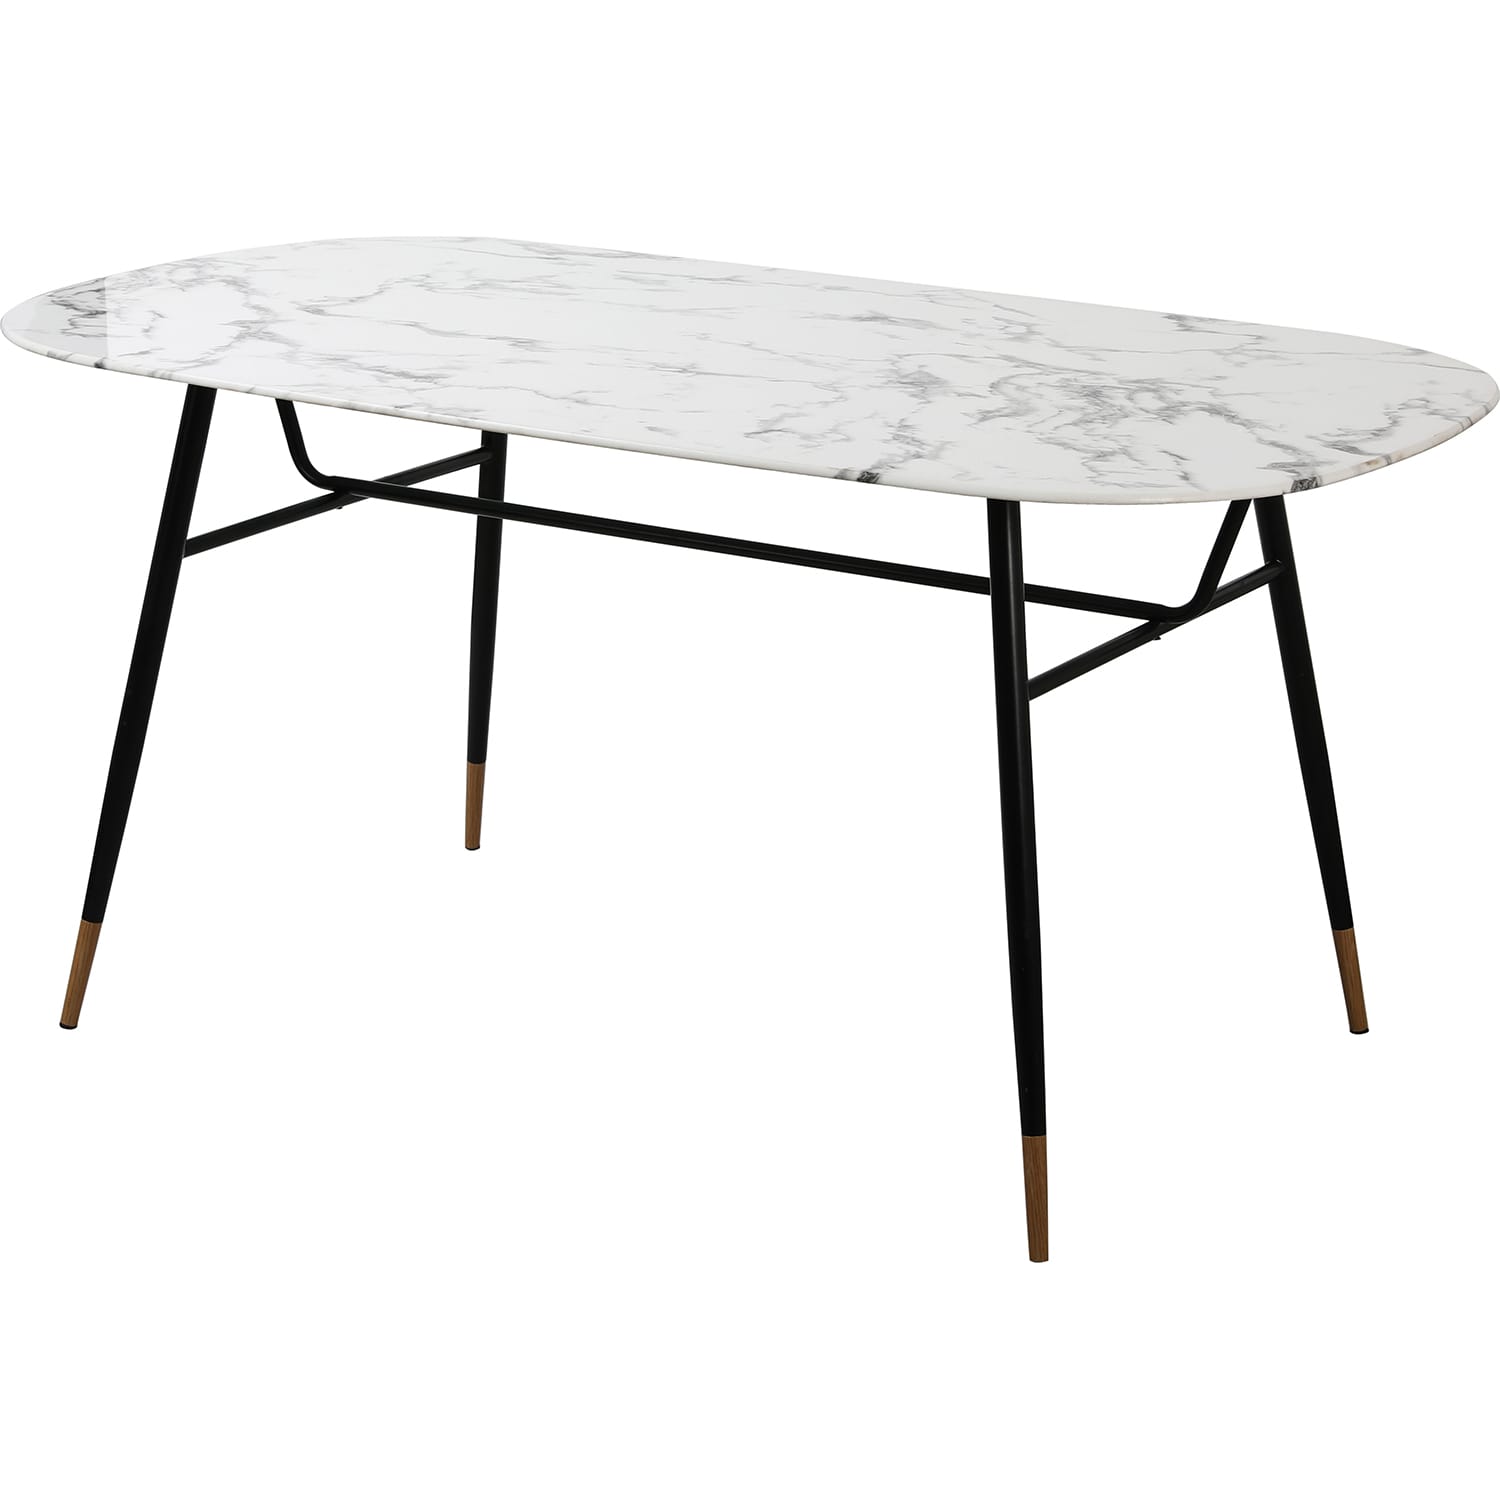 Tisch 160 | | Esstische Glas | möbel | weiss Tische Metall Möbel mutoni | Glastische